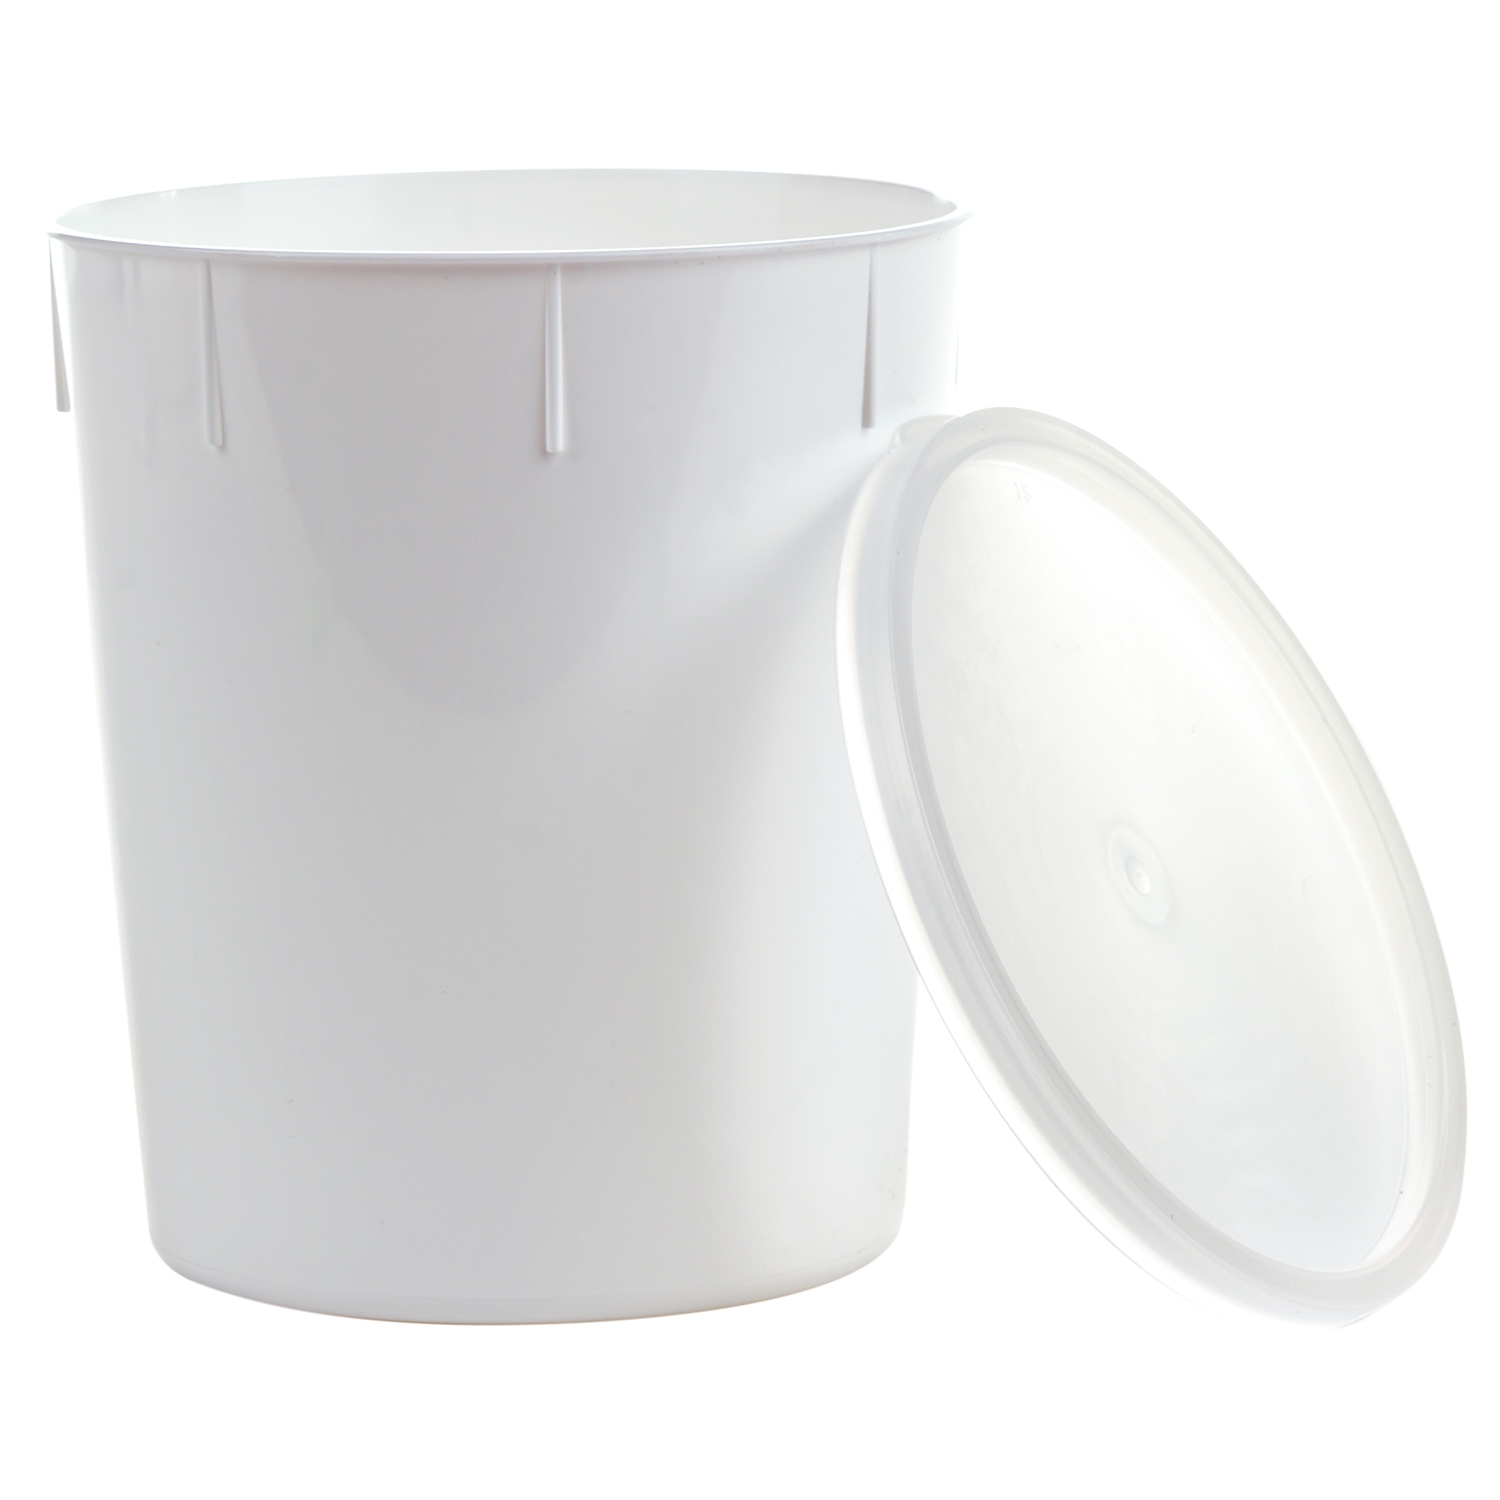 Pot à urine avec capuchon en propylène - 400 cc (460 pcs)